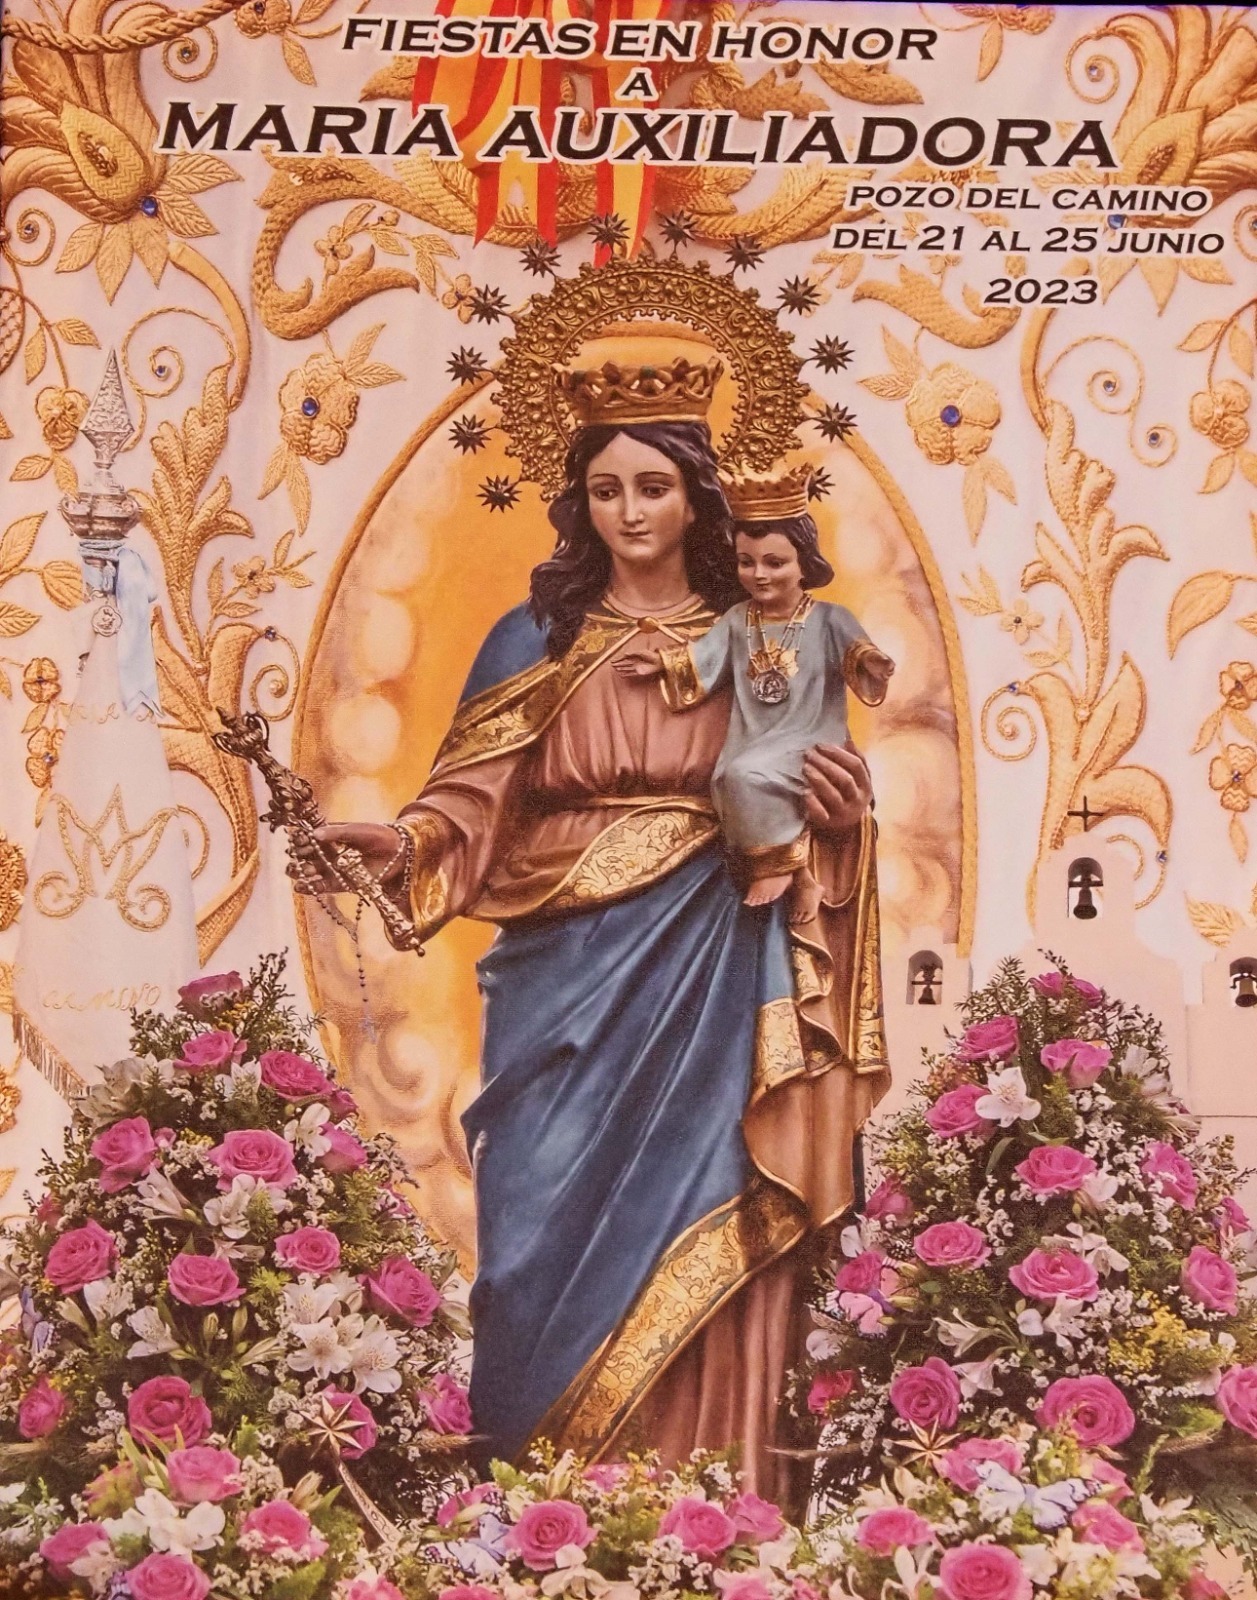 Cartel de las Fiestas Patronales en Honor a María Auxiliadora de Pozo del Camino 2023.